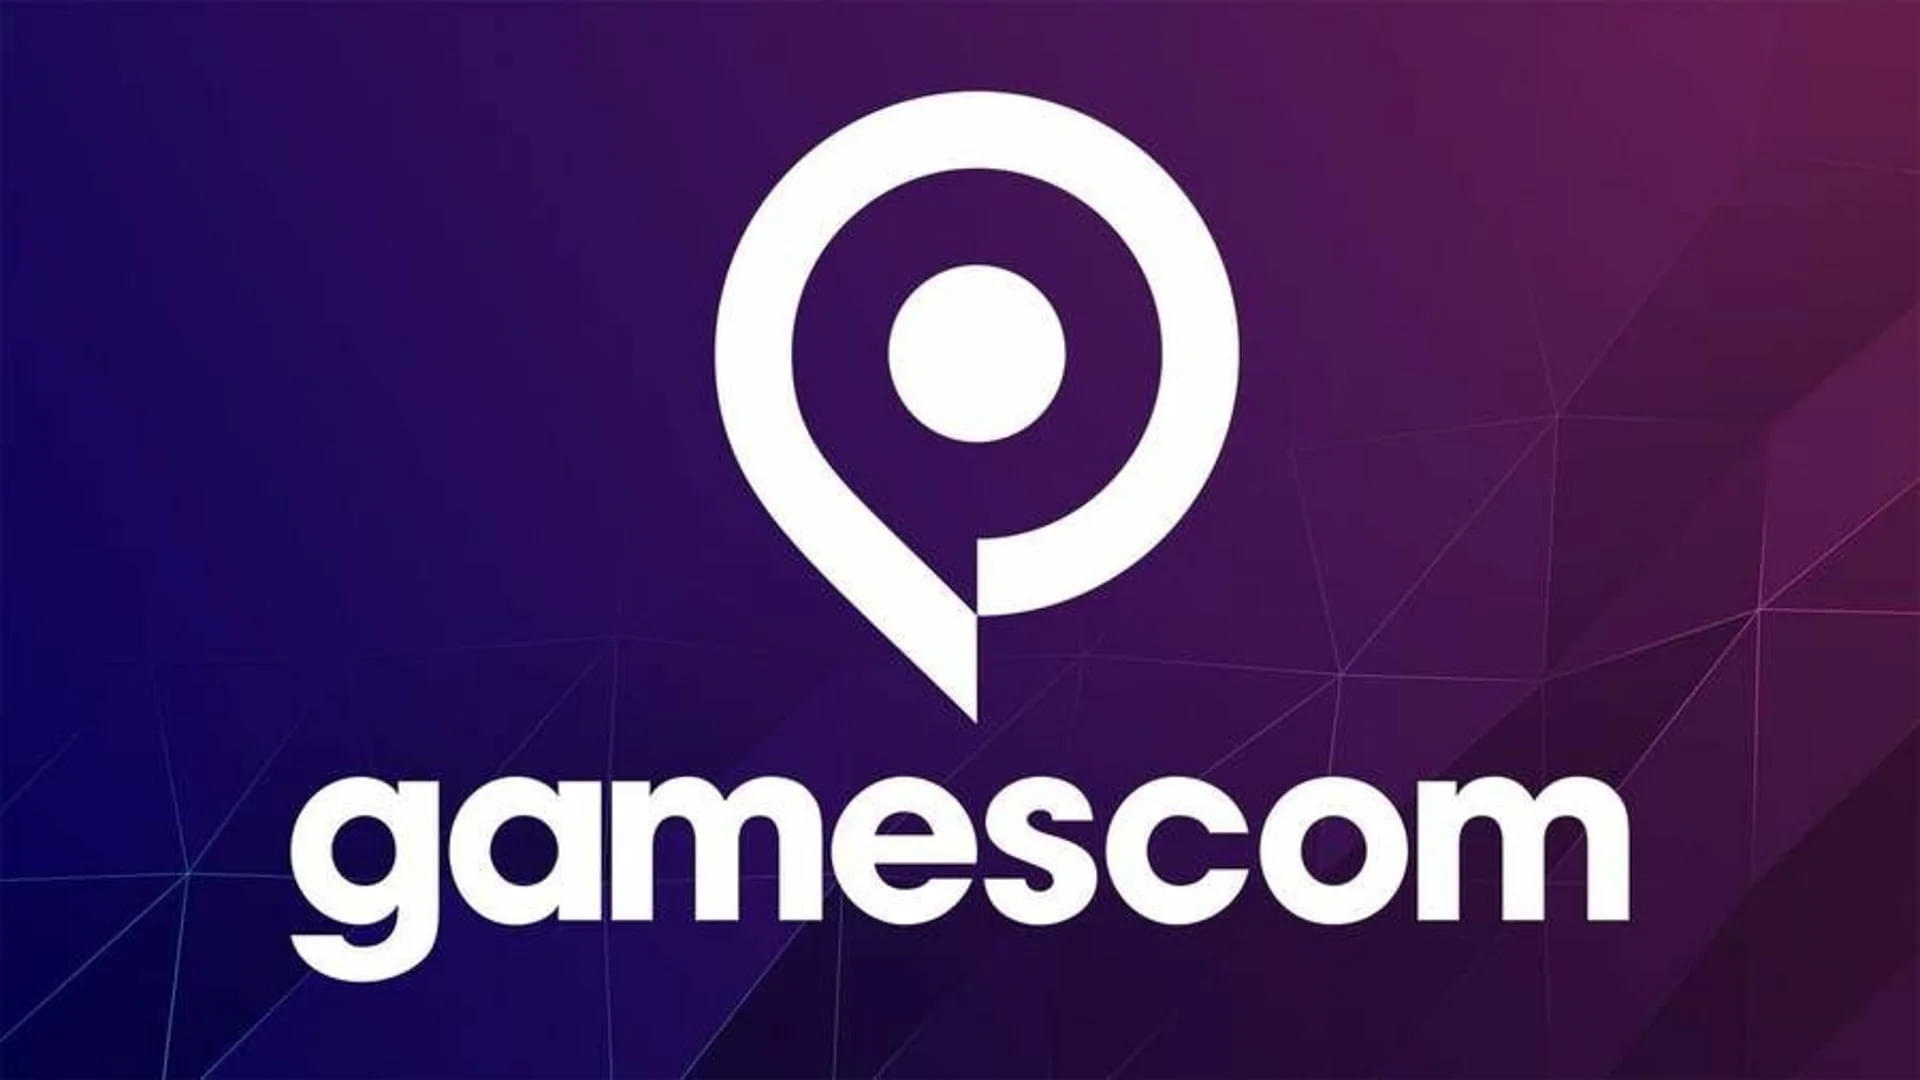 The Gamescom logo